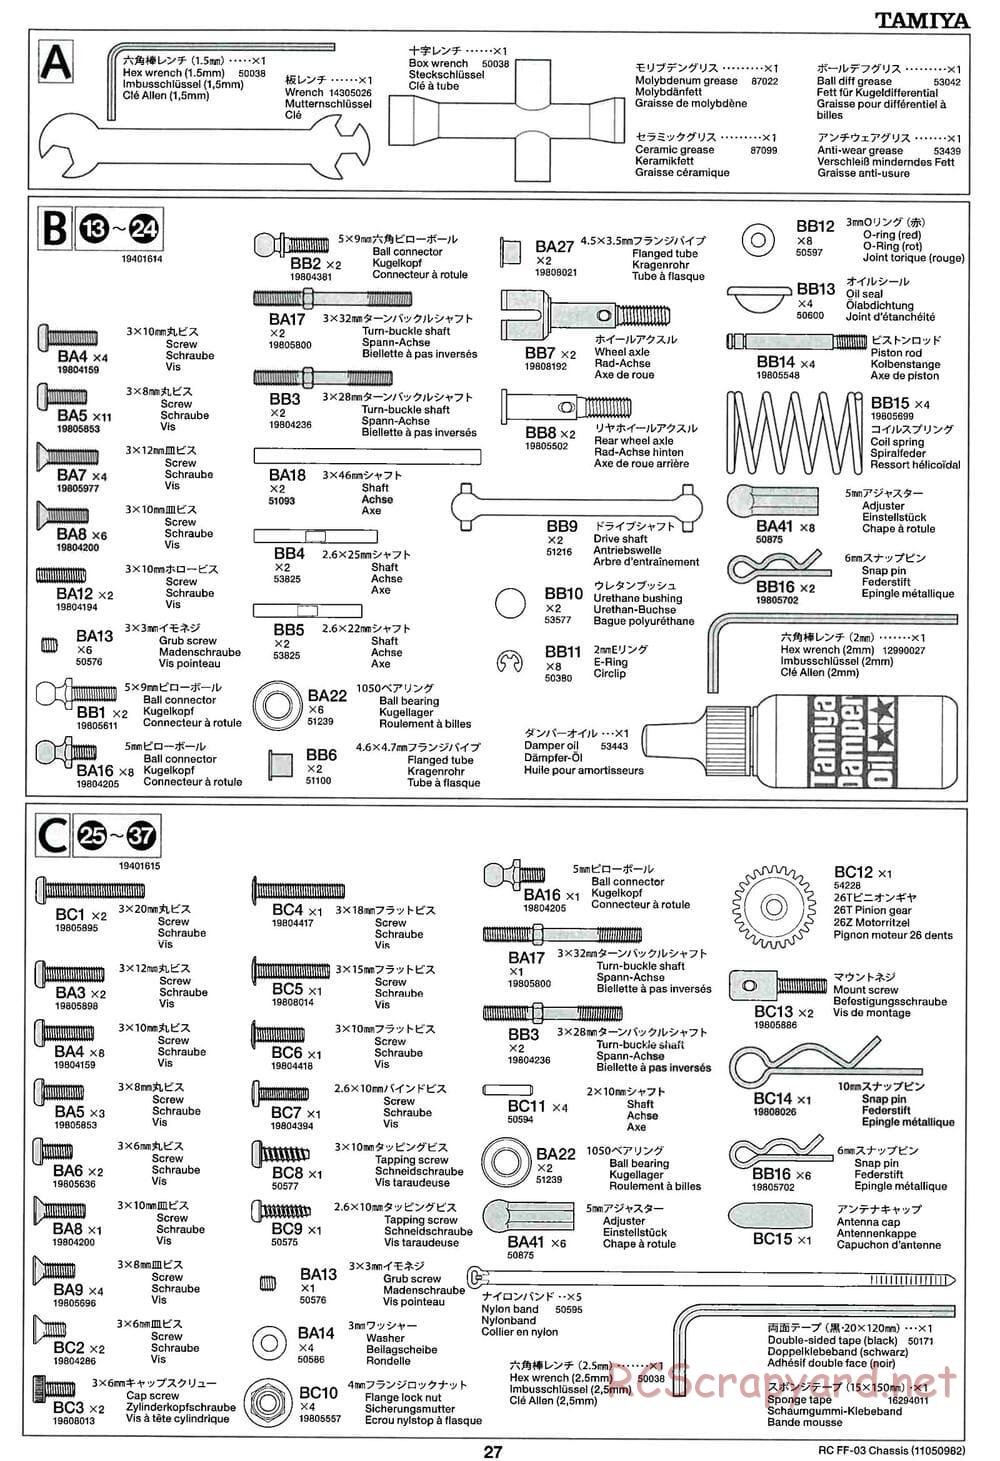 Tamiya - Honda Accord Aero Custom - FF-03 Chassis - Manual - Page 27